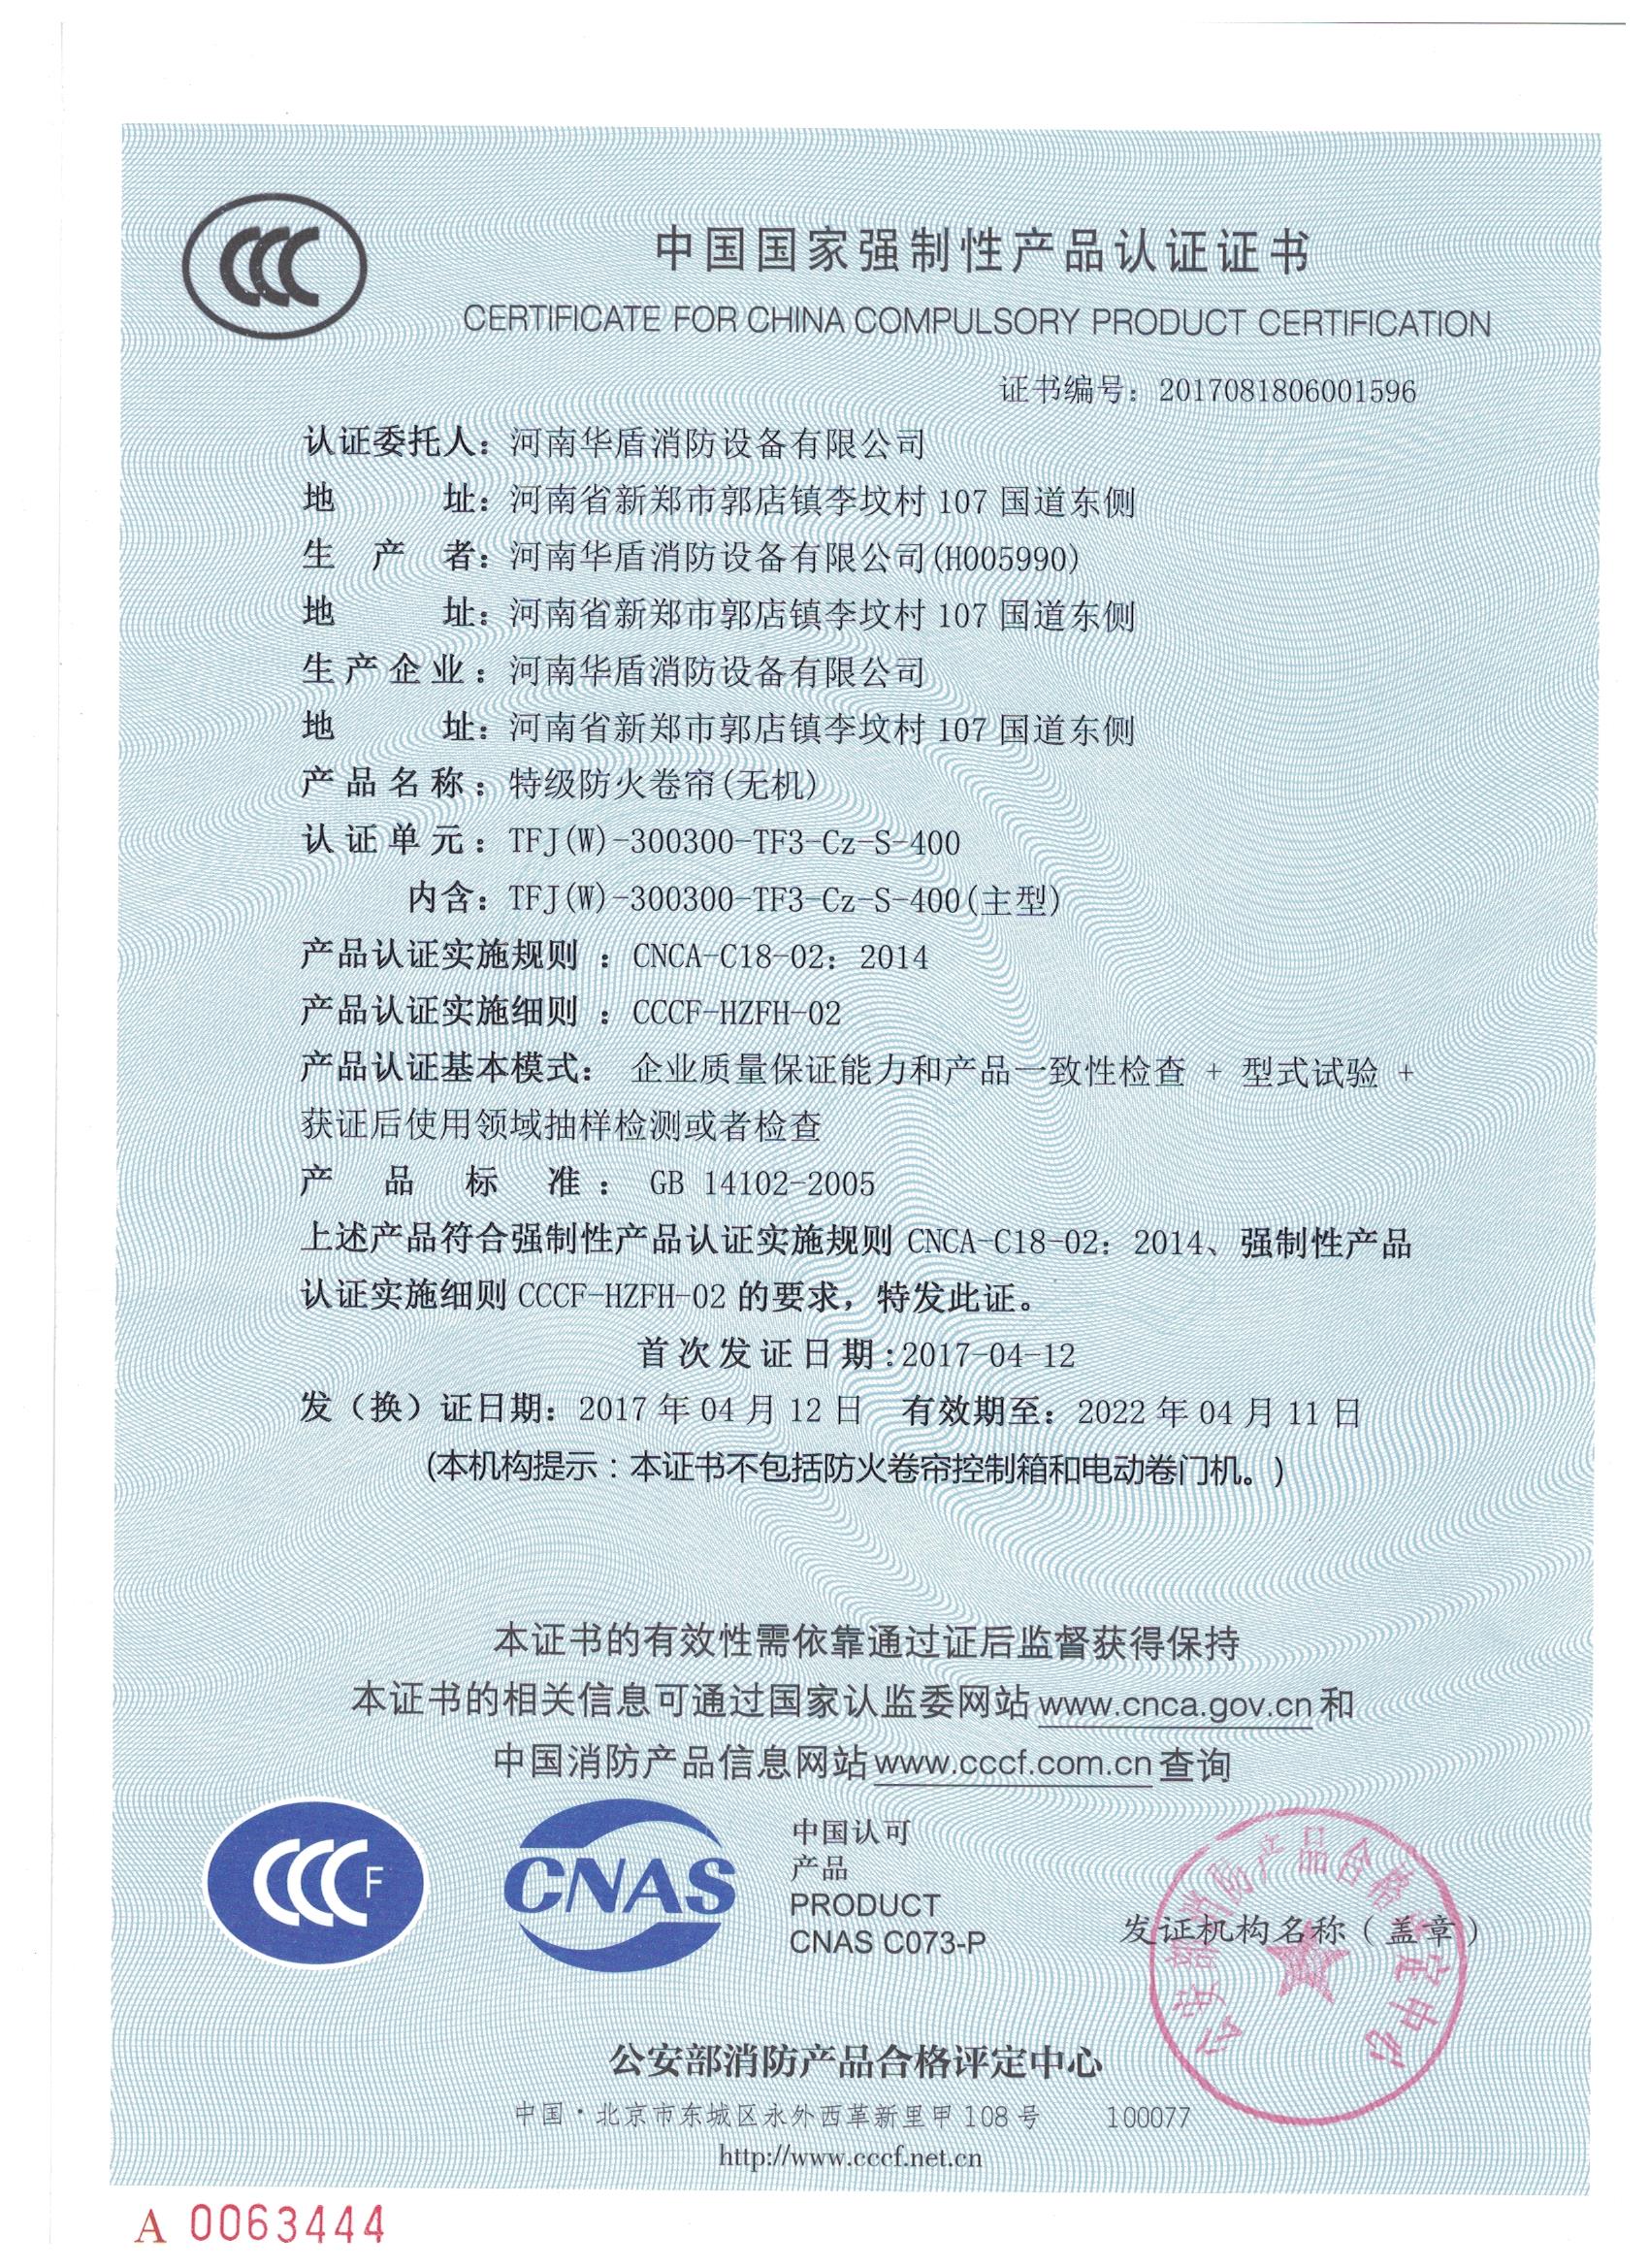 郑州TFJ（W）-300300-TF3-Cz-S-400-3C证书